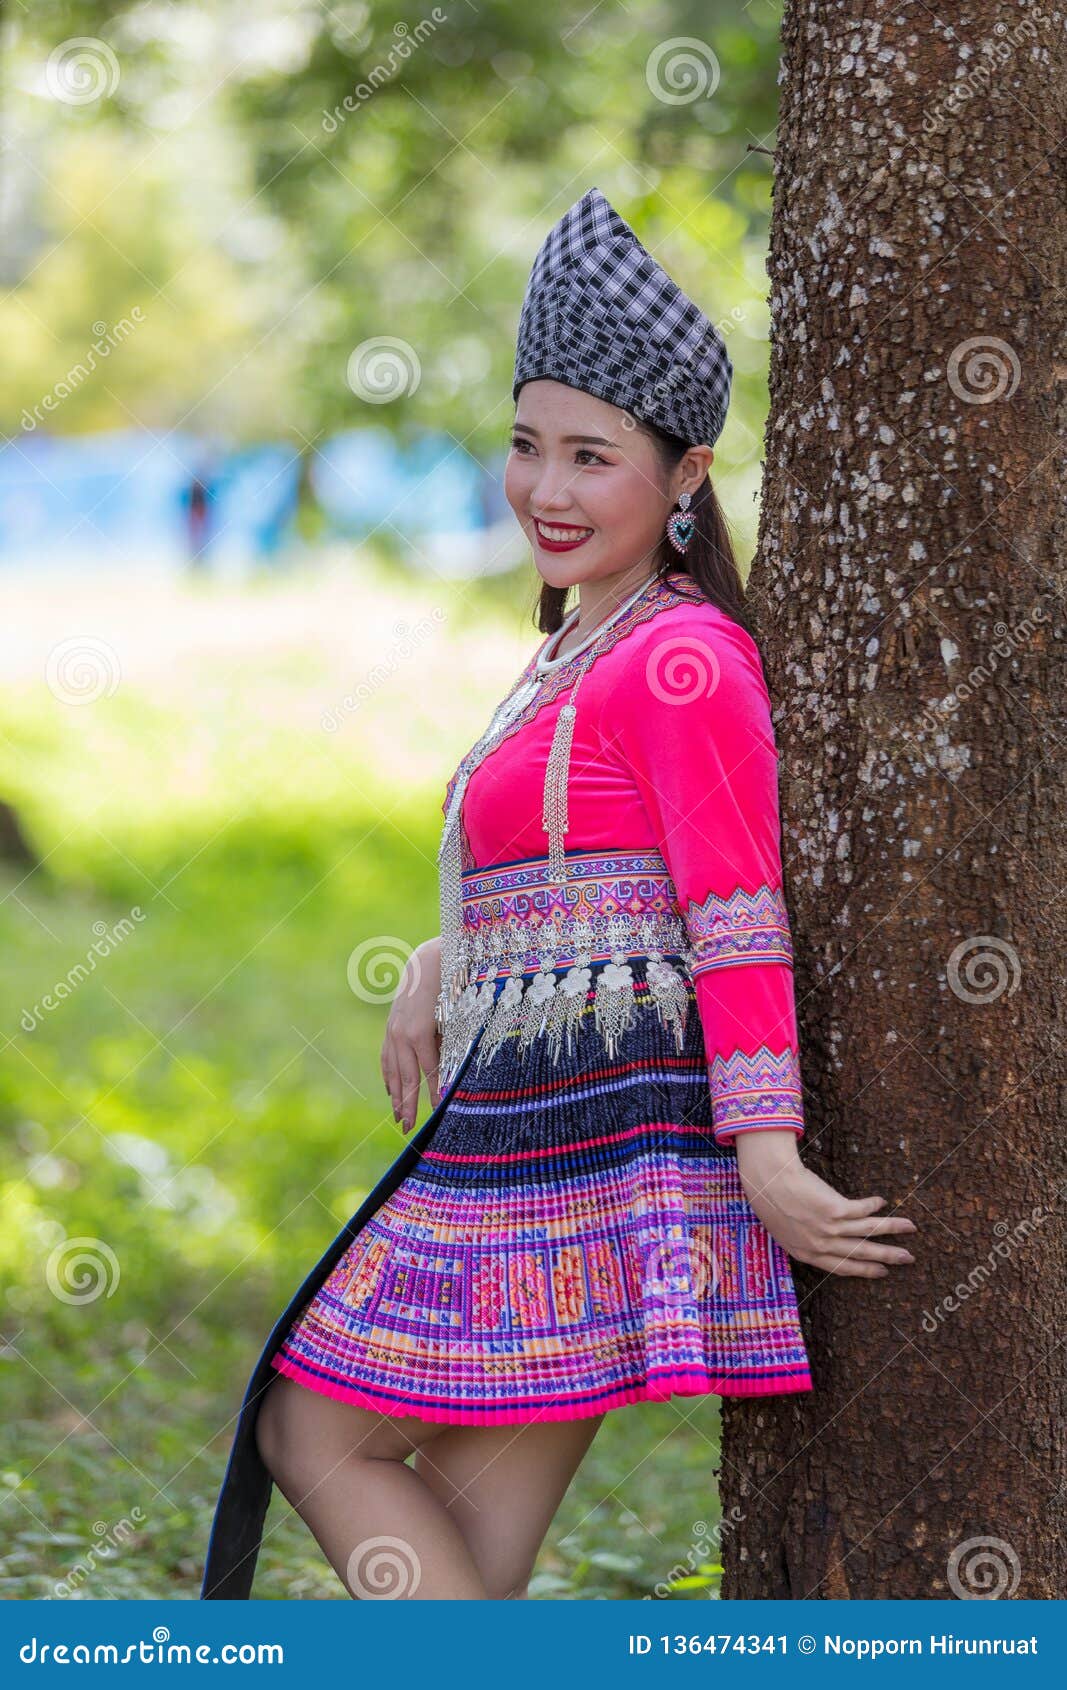 Hmong Girls Model